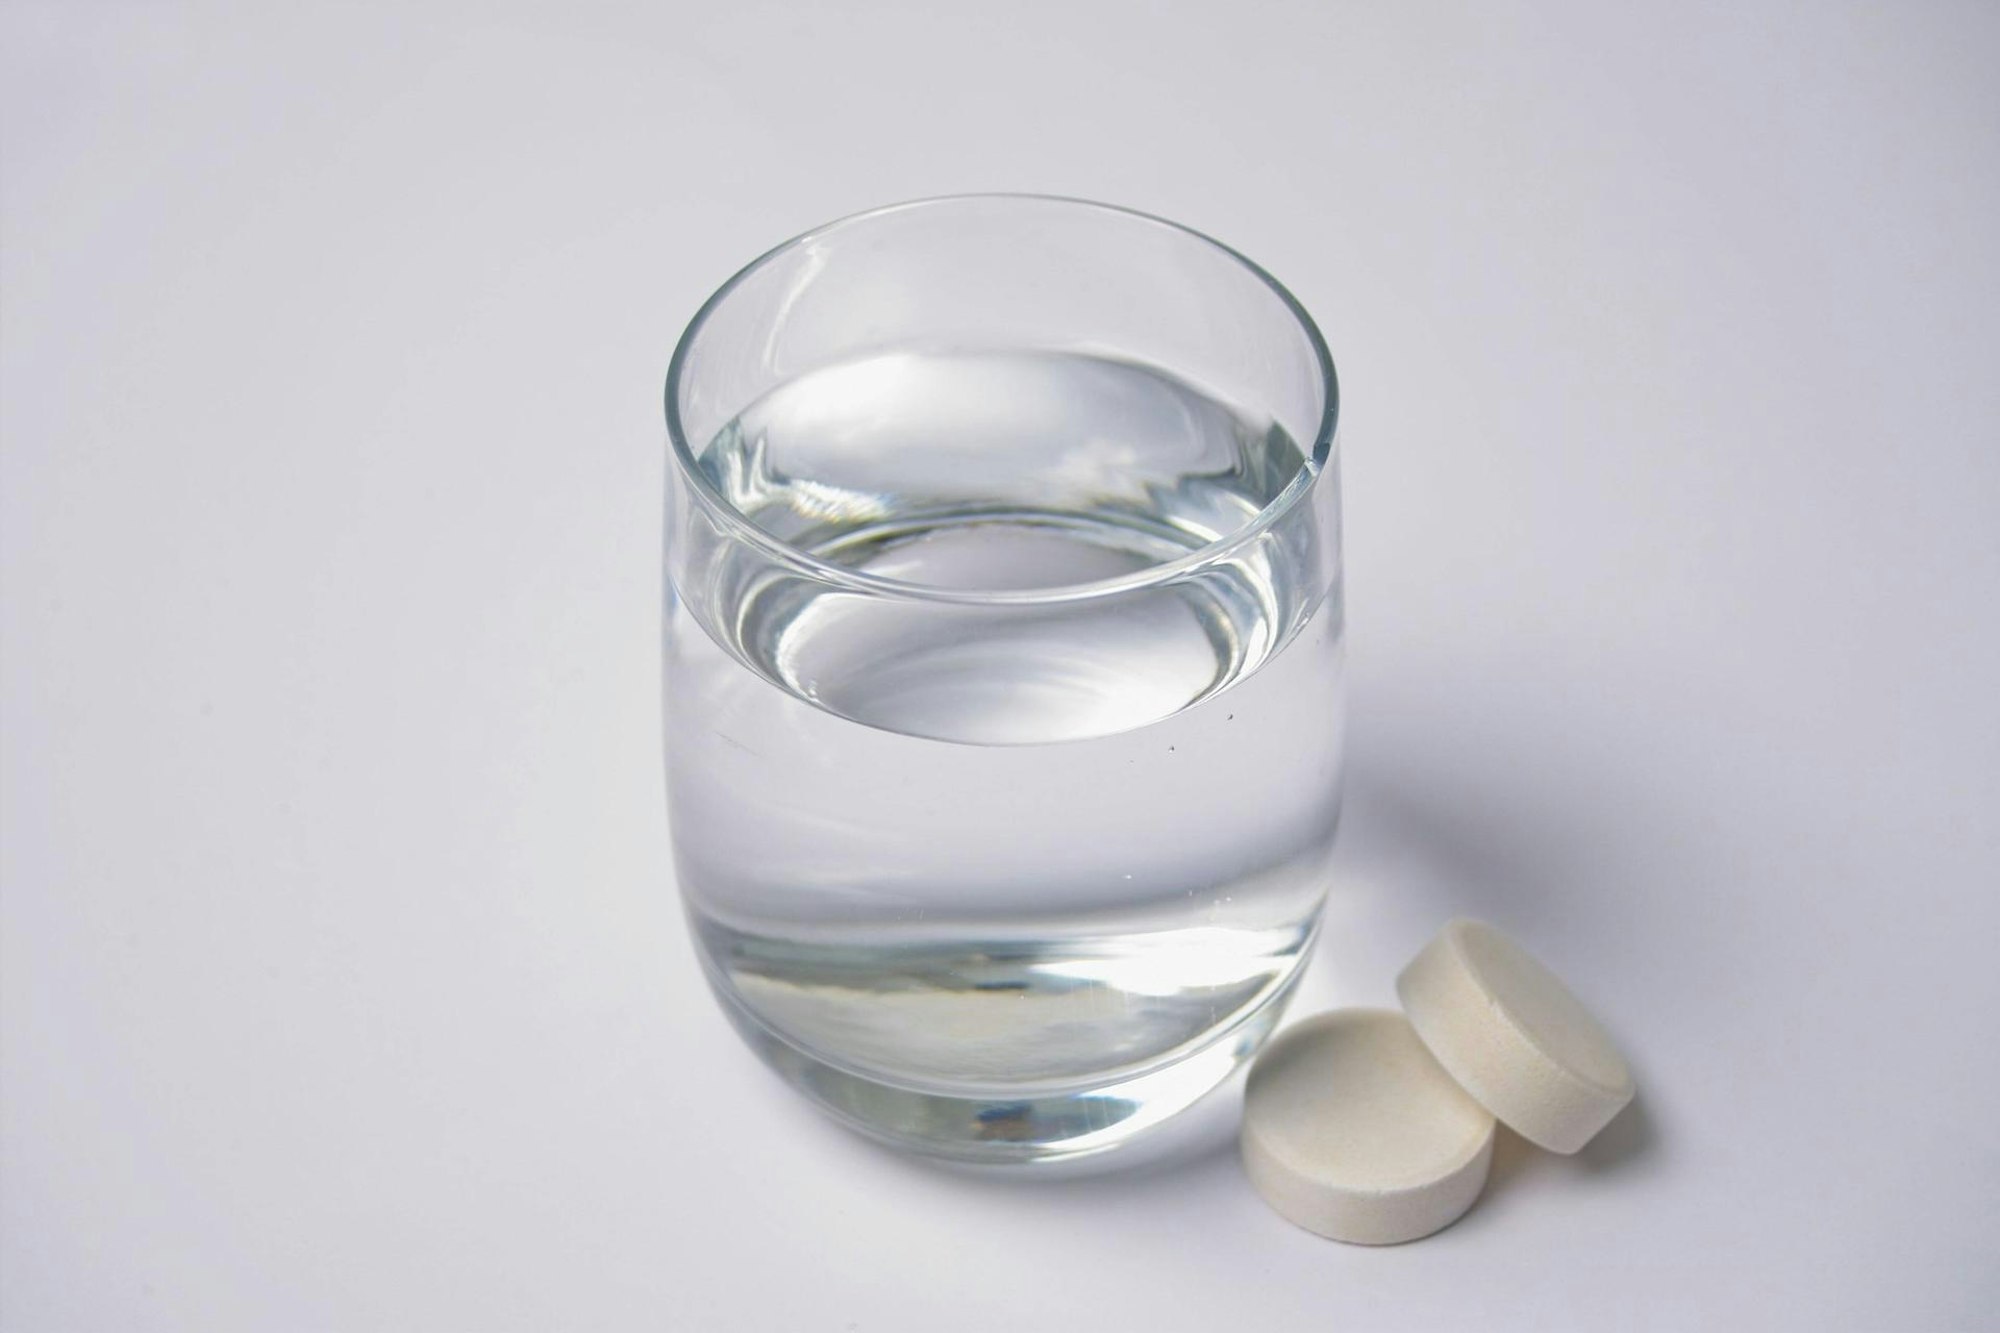 Das Symbolbild zeigt ein Wasserglas mit zwei Tabletten, die daneben liegen.Der Hersteller Abtei ruft bestimmte Vitamin-Präparate zurück, die bundesweit verkauft wurden.